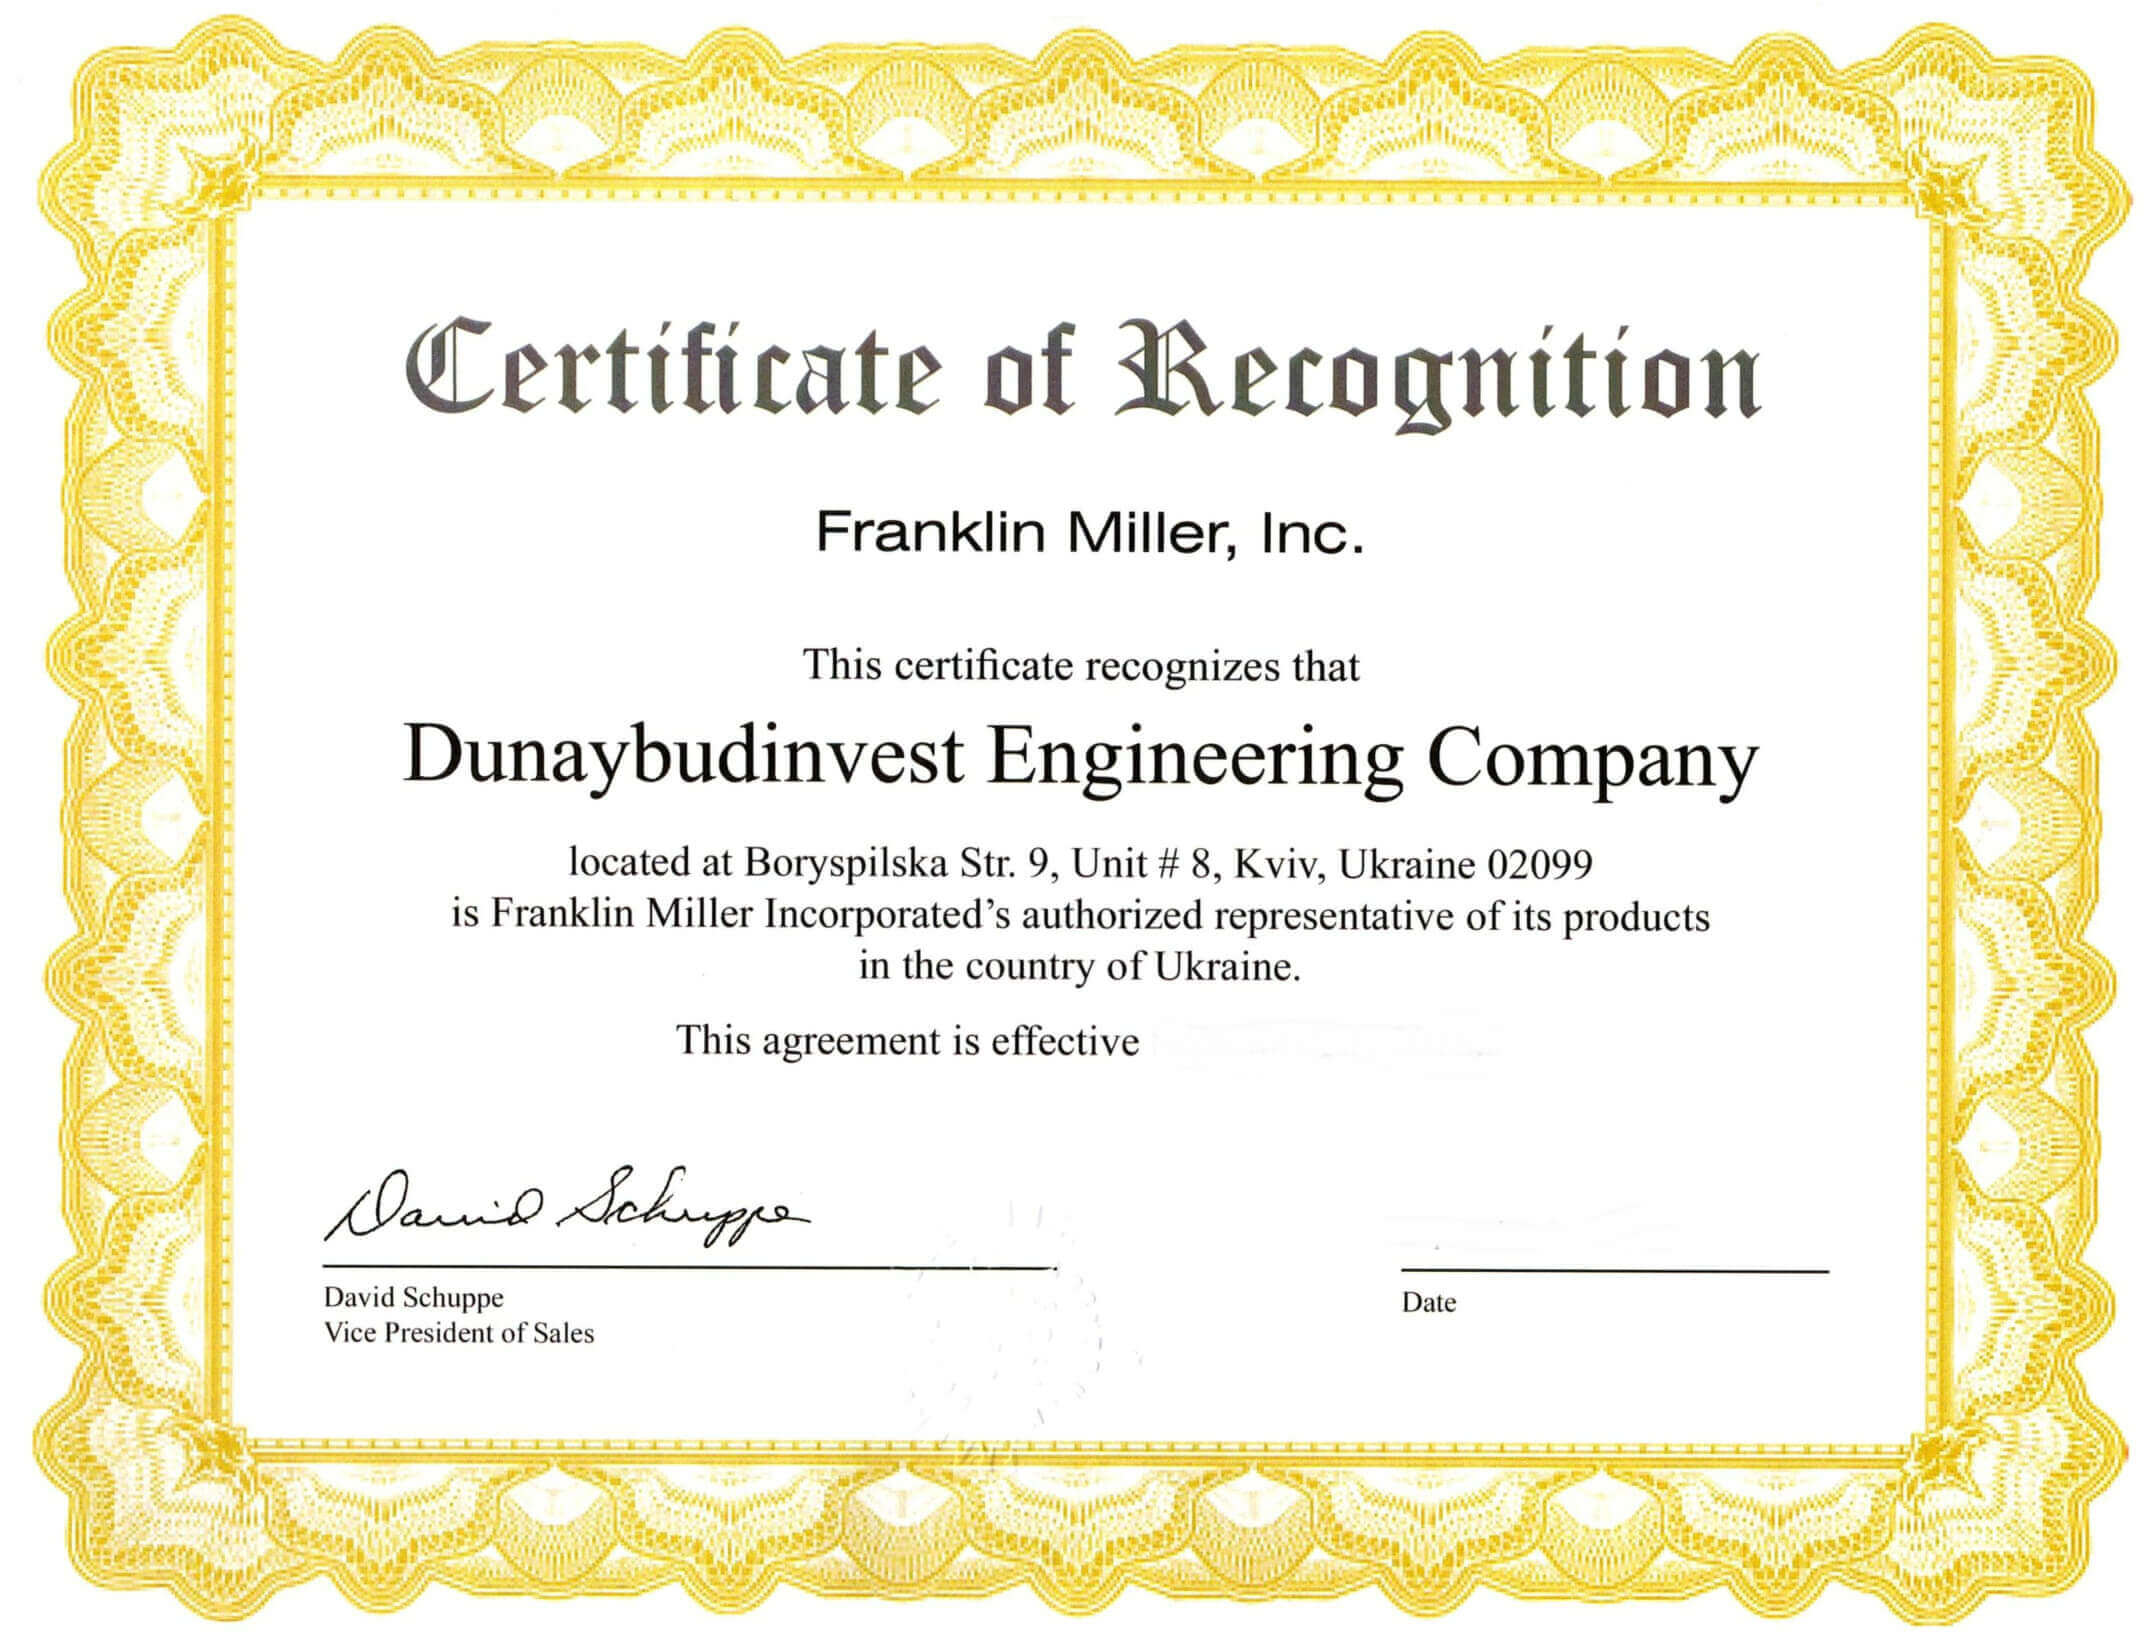 сертификат франклин миллер дунайбудинвест